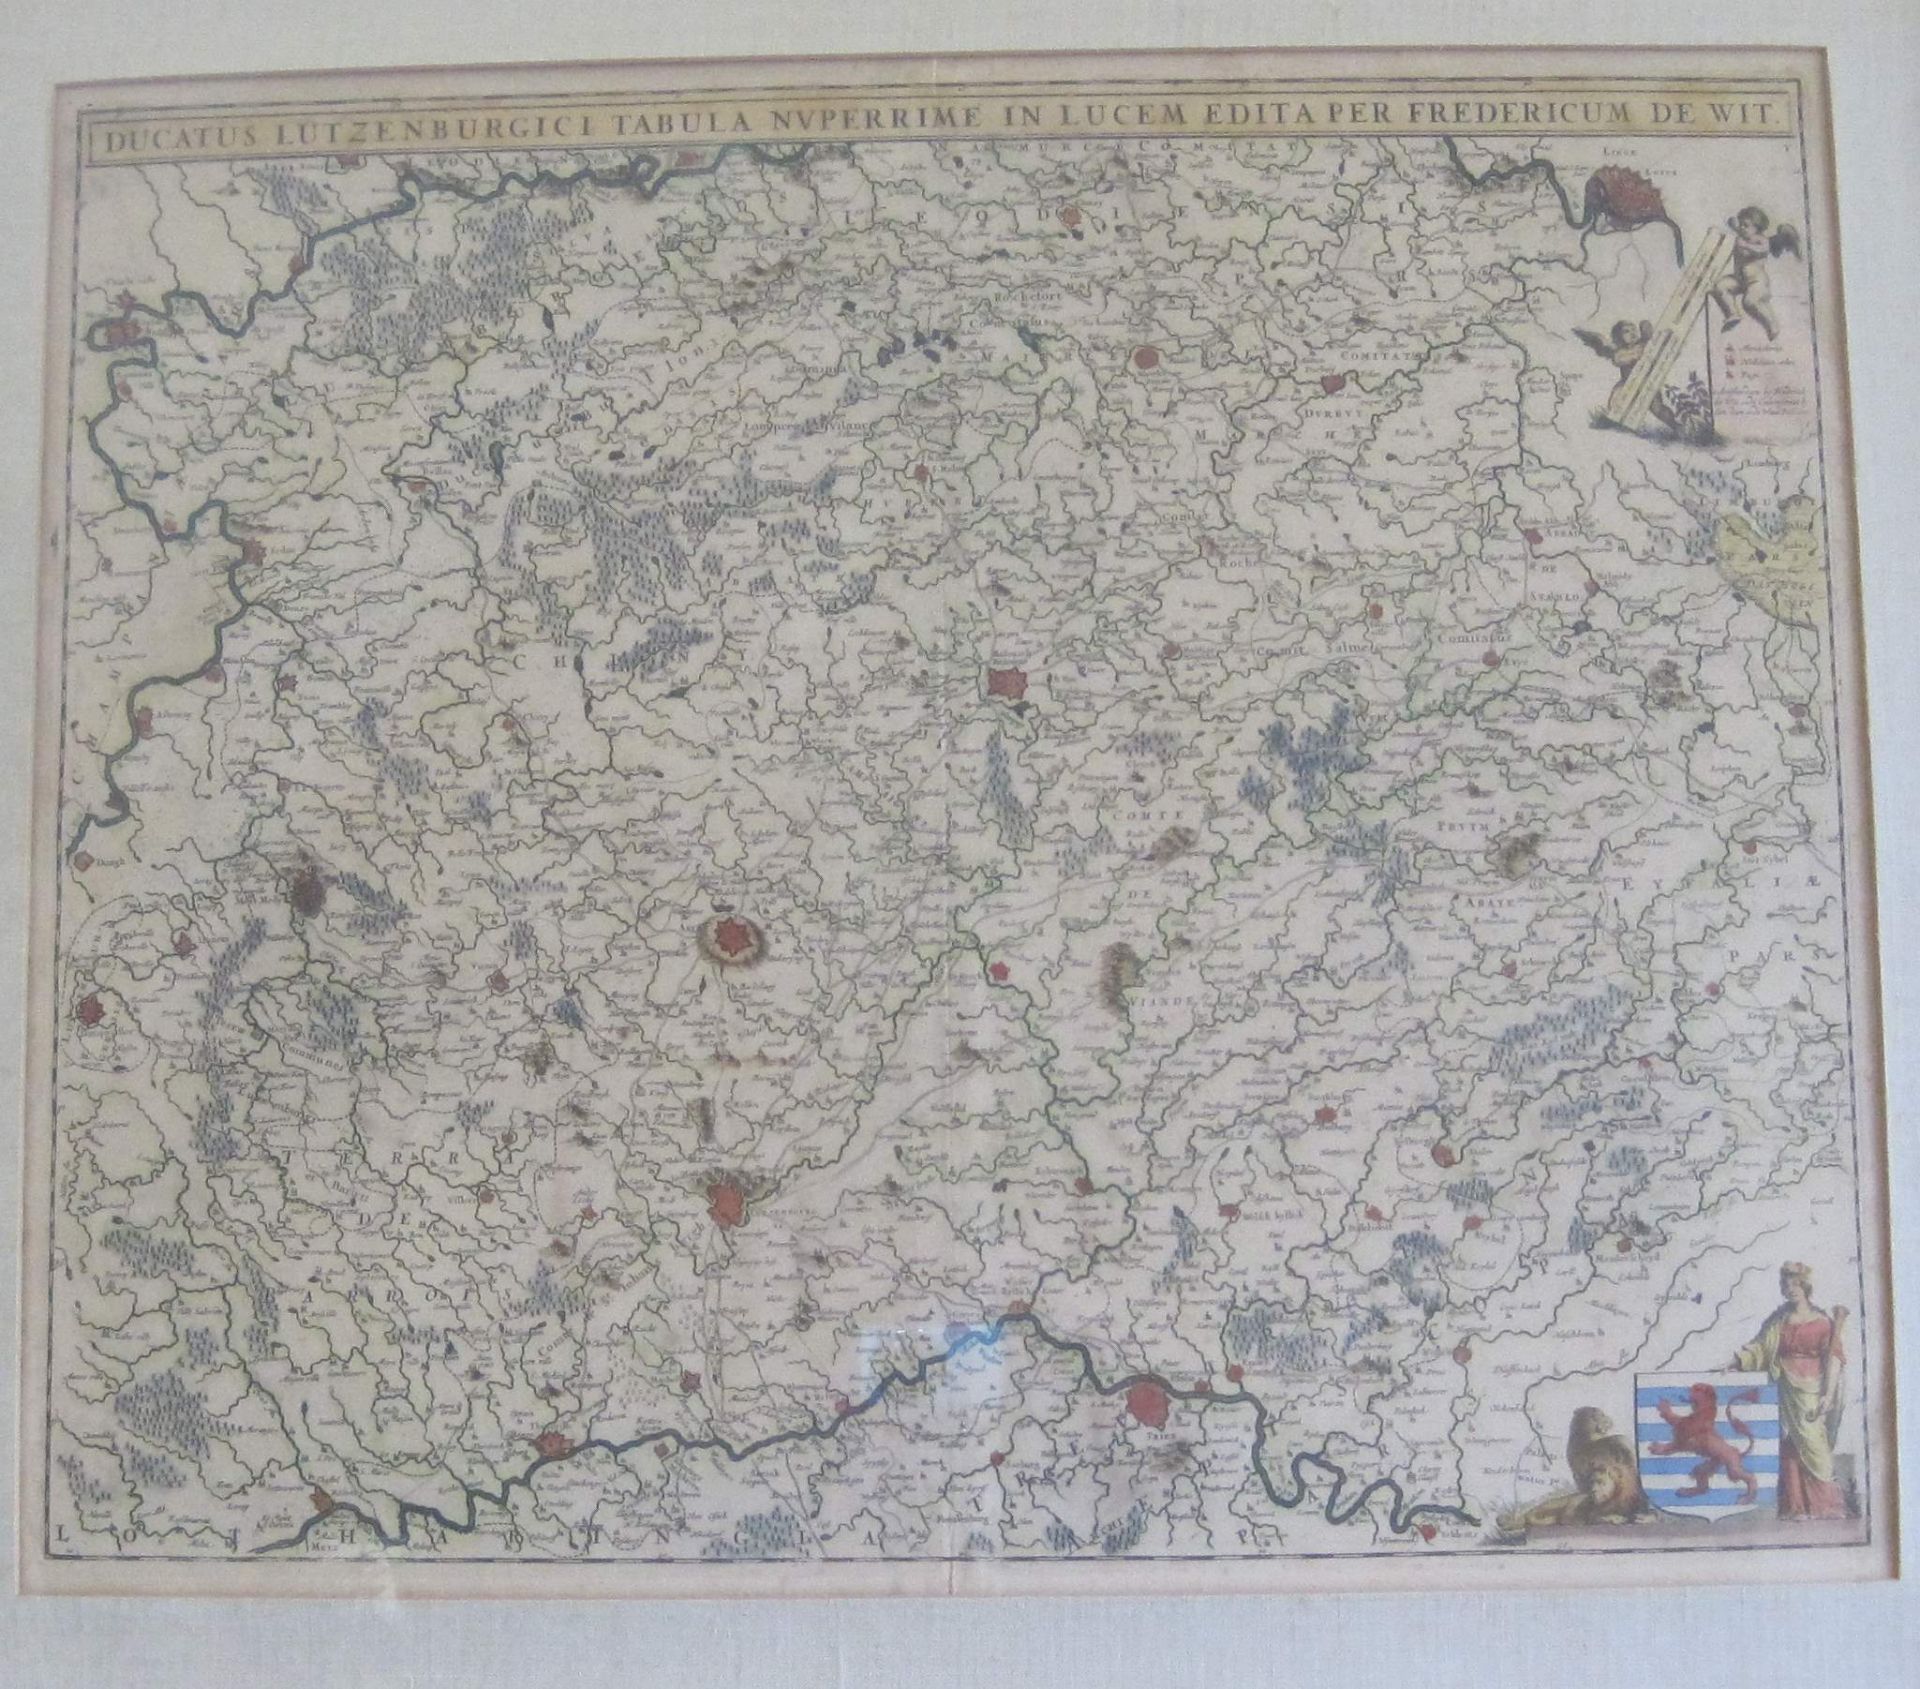 Carte encadrée de Luxembourg "Ducatus Lutzenburgici Tabula Nuperrime in Lucem edita [...]